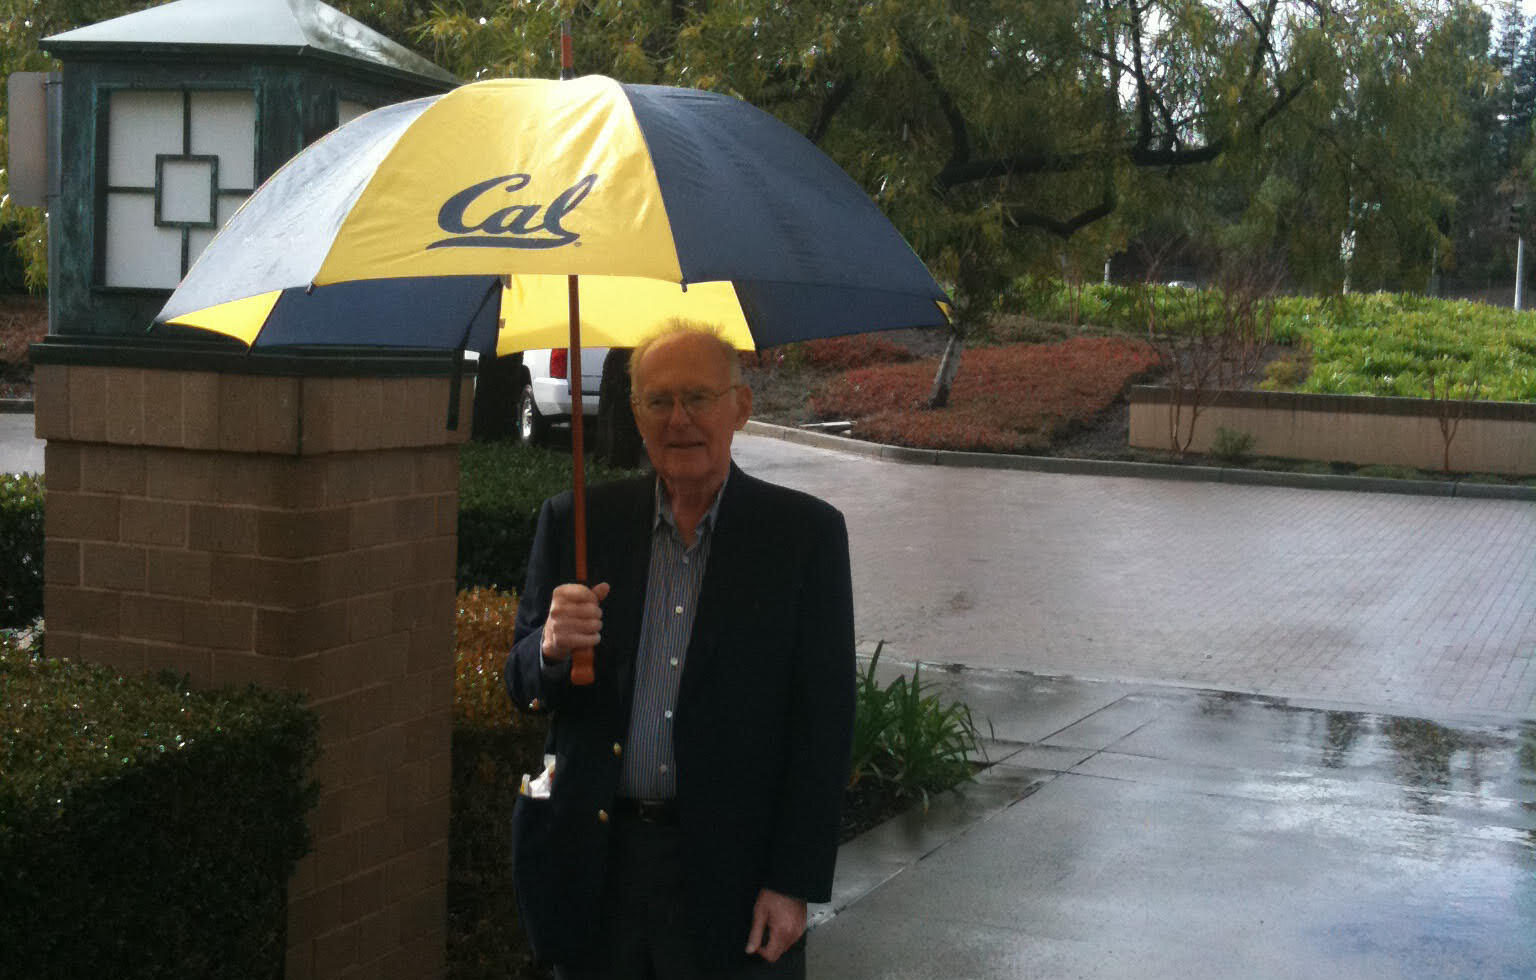 Gordon Moore with a Cal umbrella